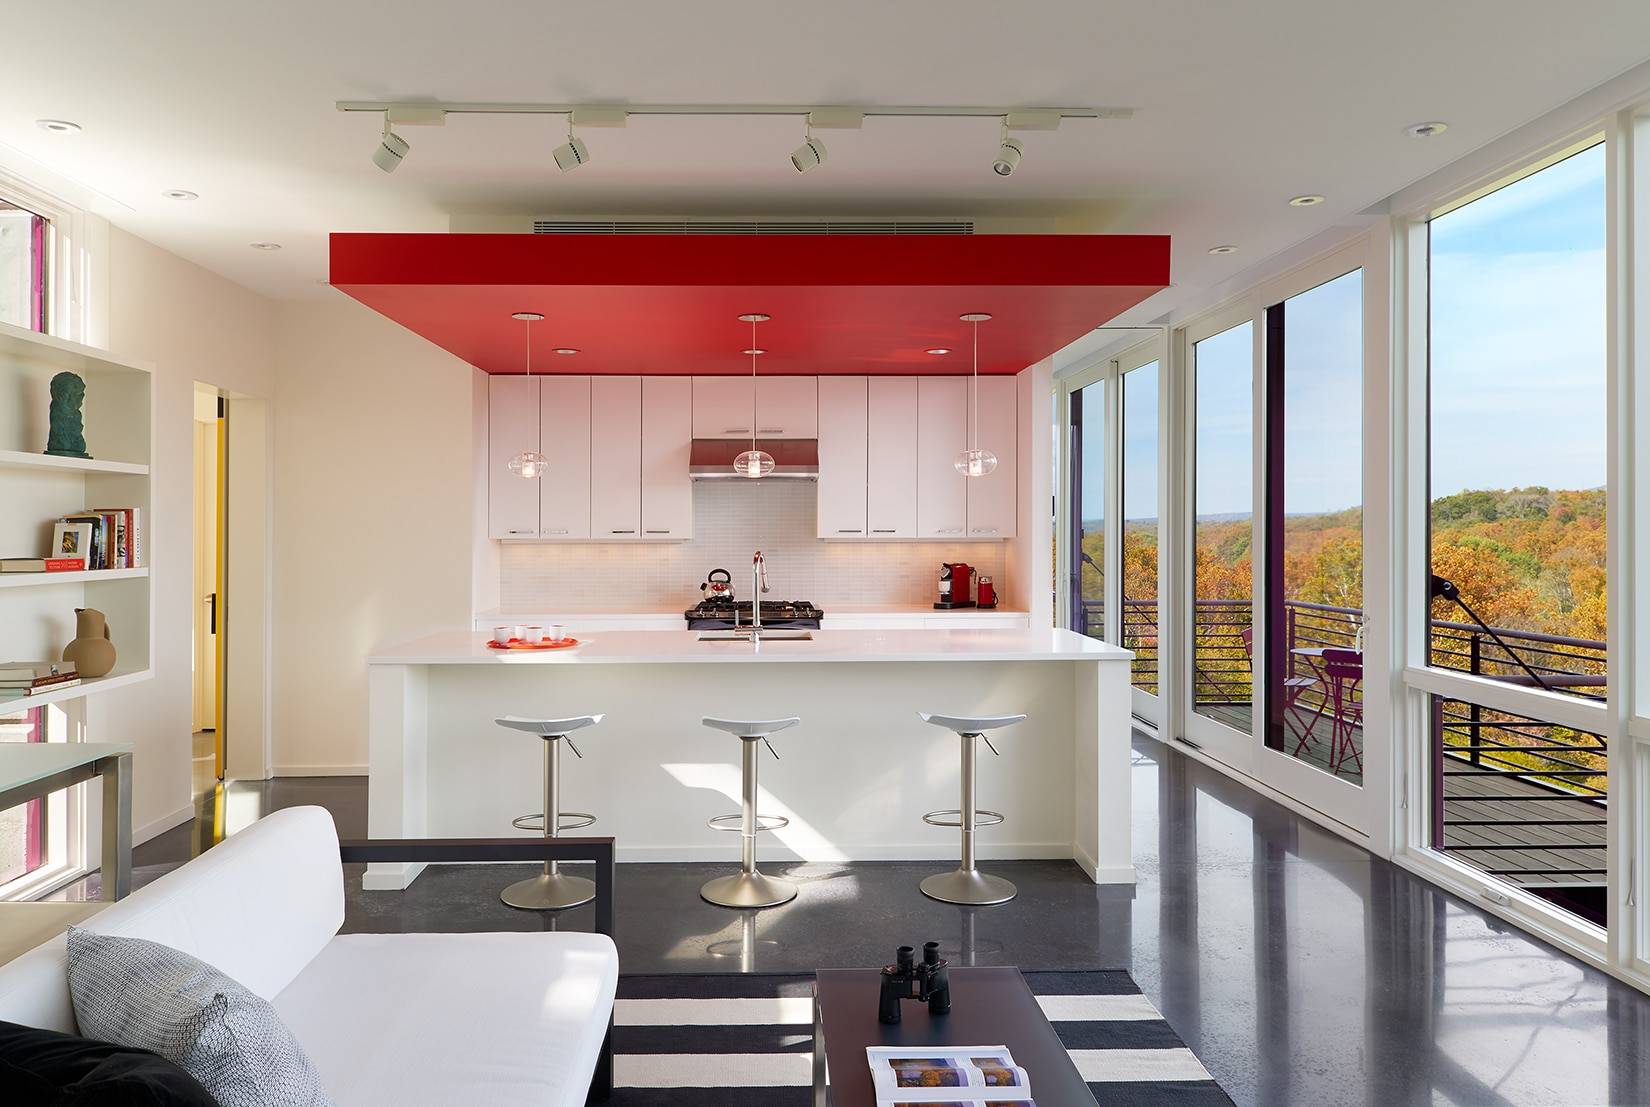 Какой потолок лучше сделать на кухне? материалы для отделки потолка на кухне